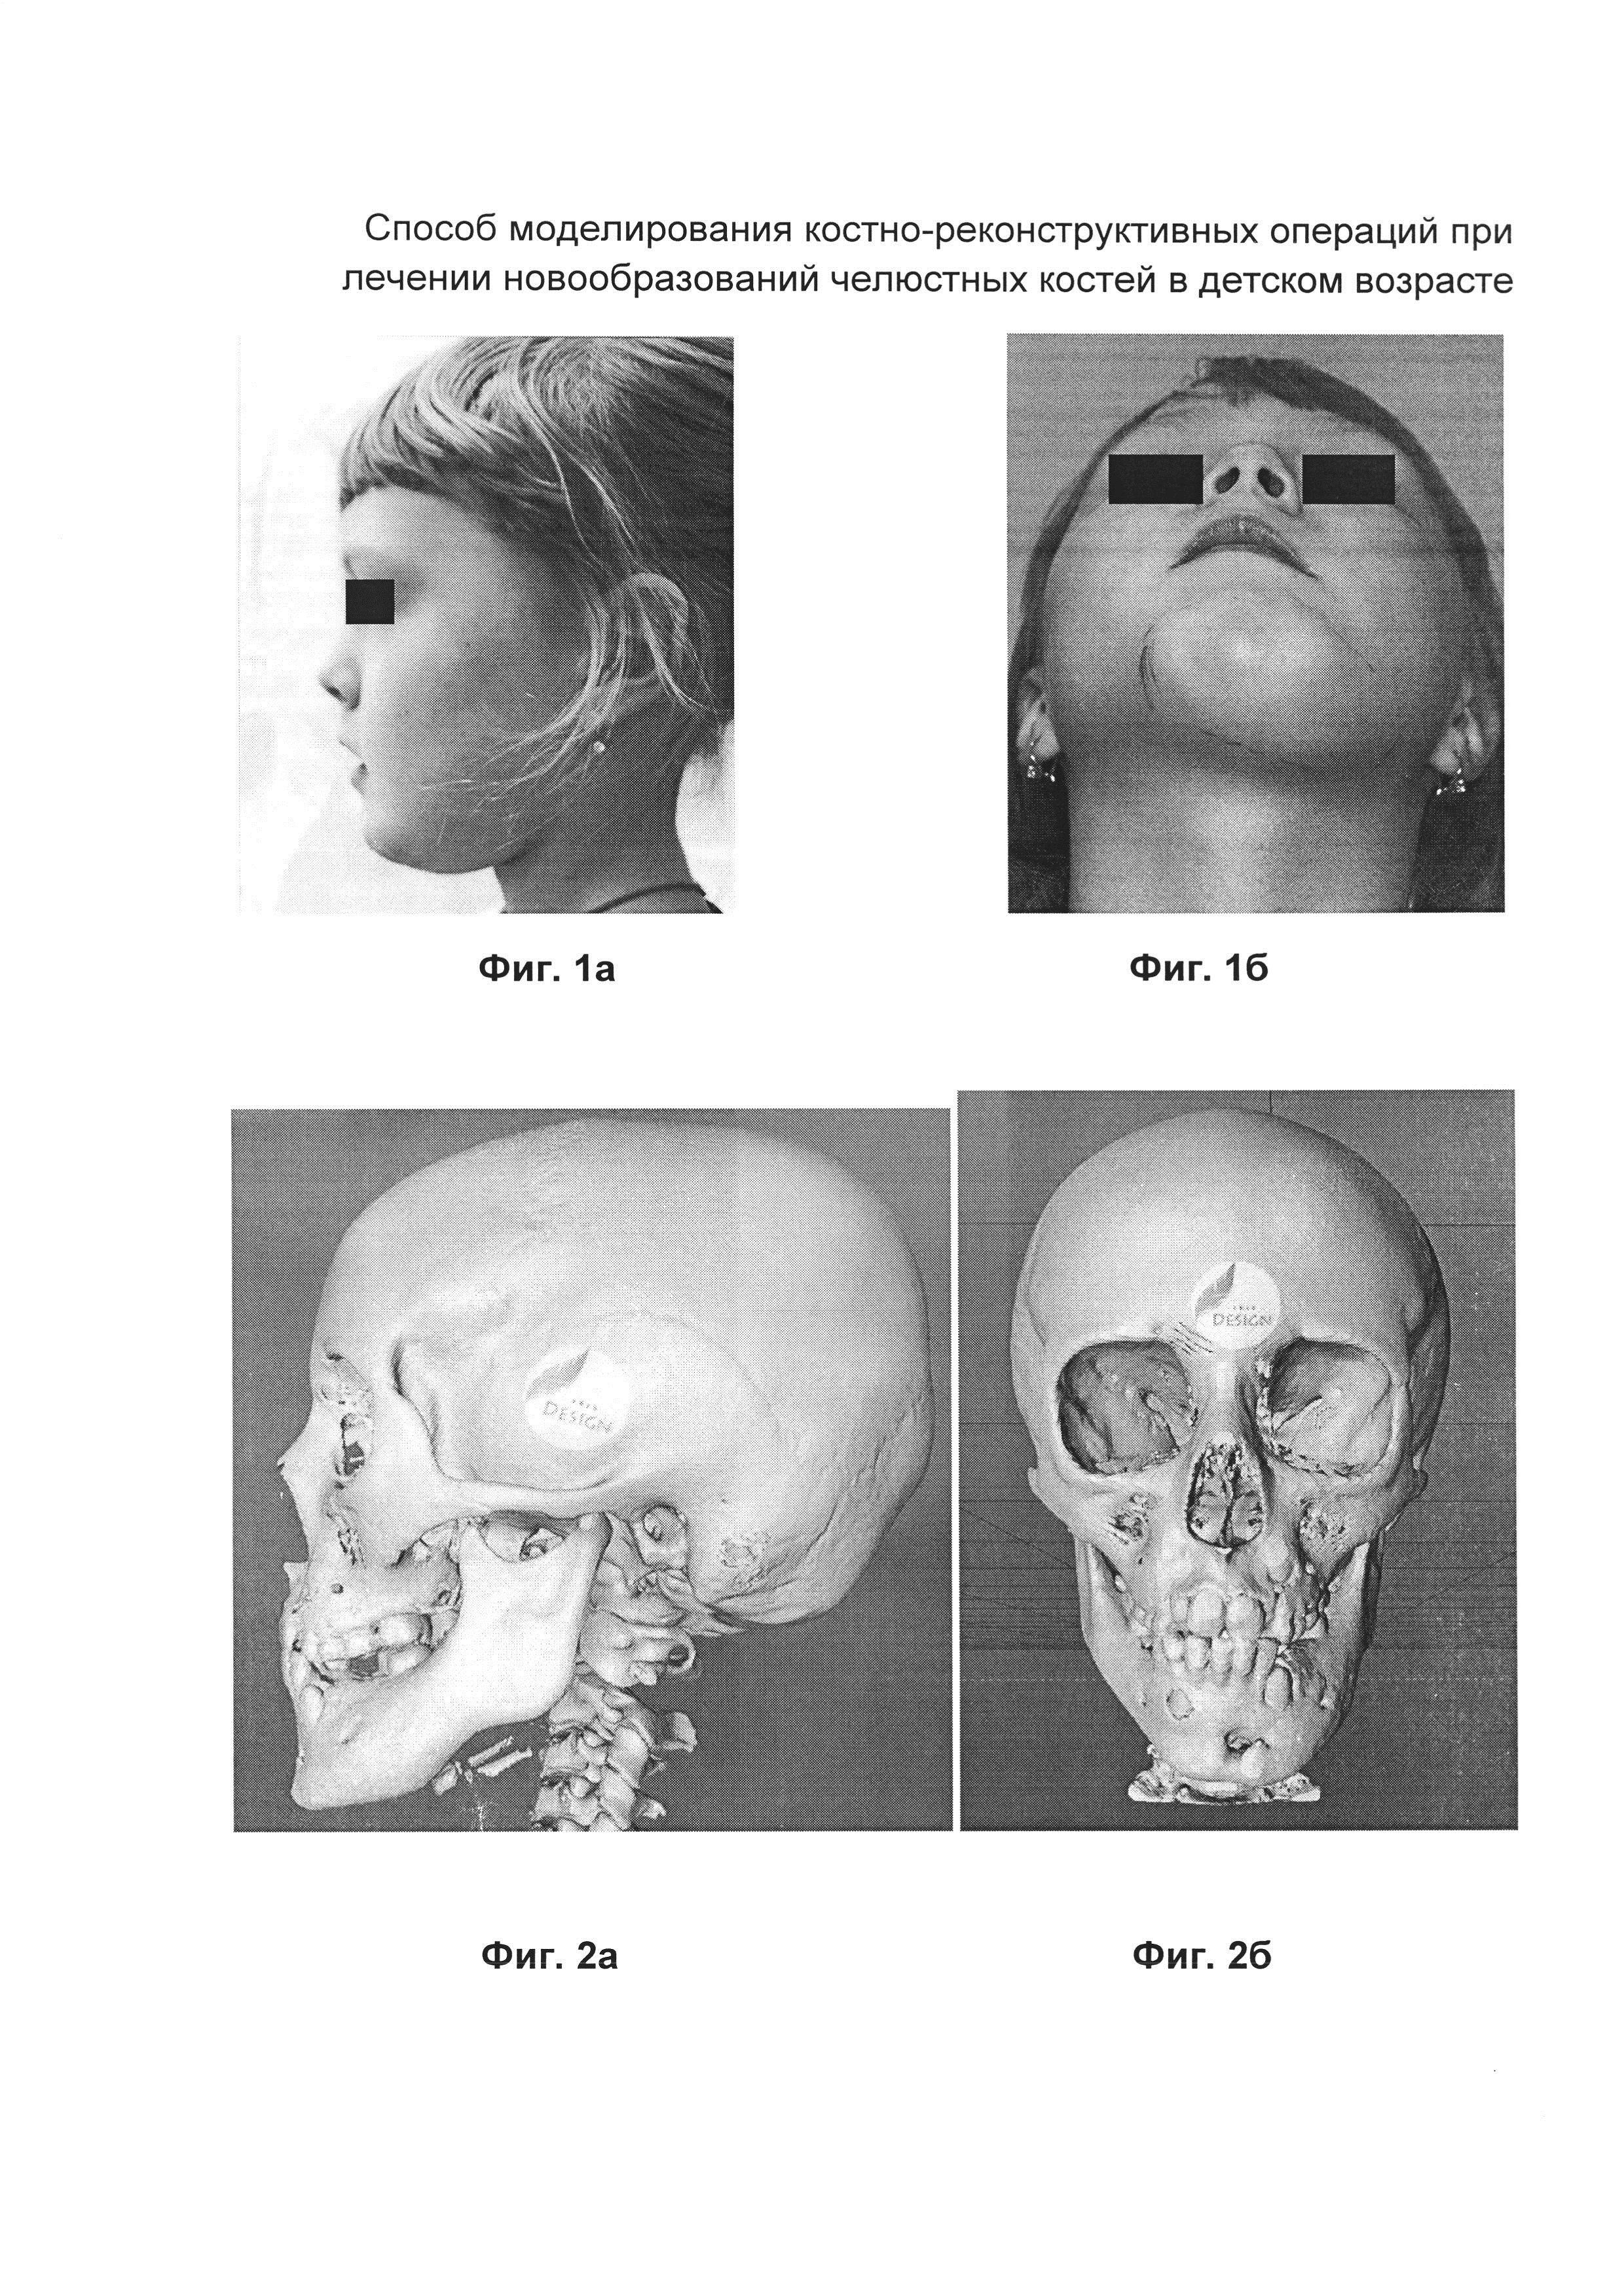 Способ моделирования костно-реконструктивных операций при лечении новообразований челюстных костей в детском возрасте